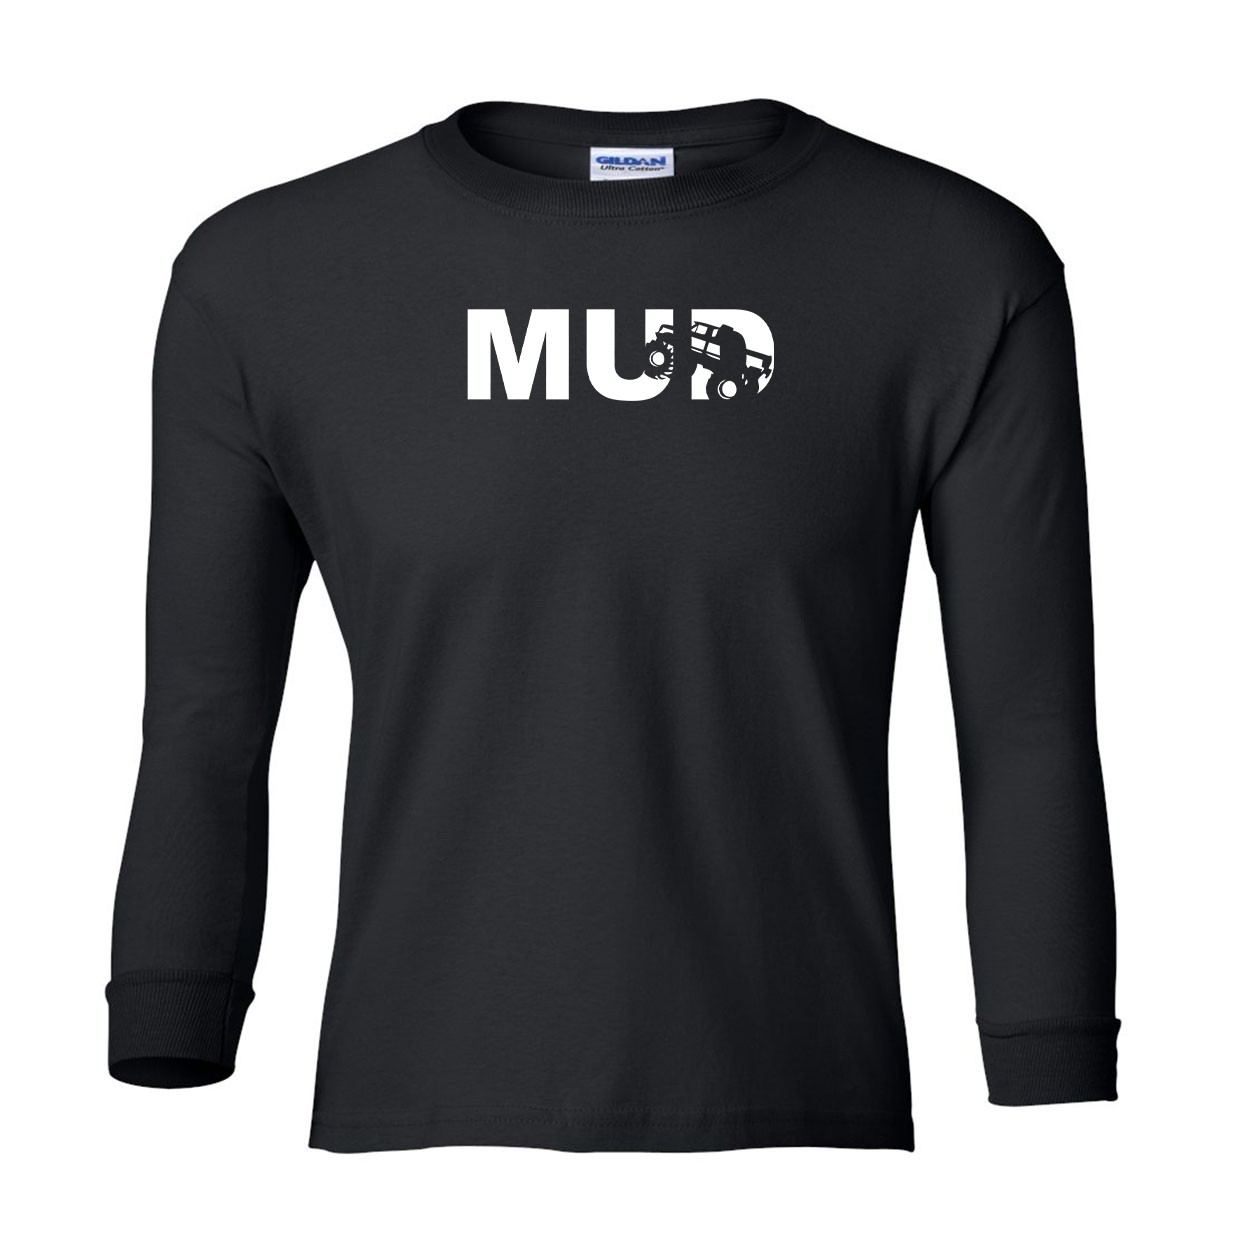 Mud Truck Logo Classic Youth Unisex Long Sleeve T-Shirt Black (White Logo)